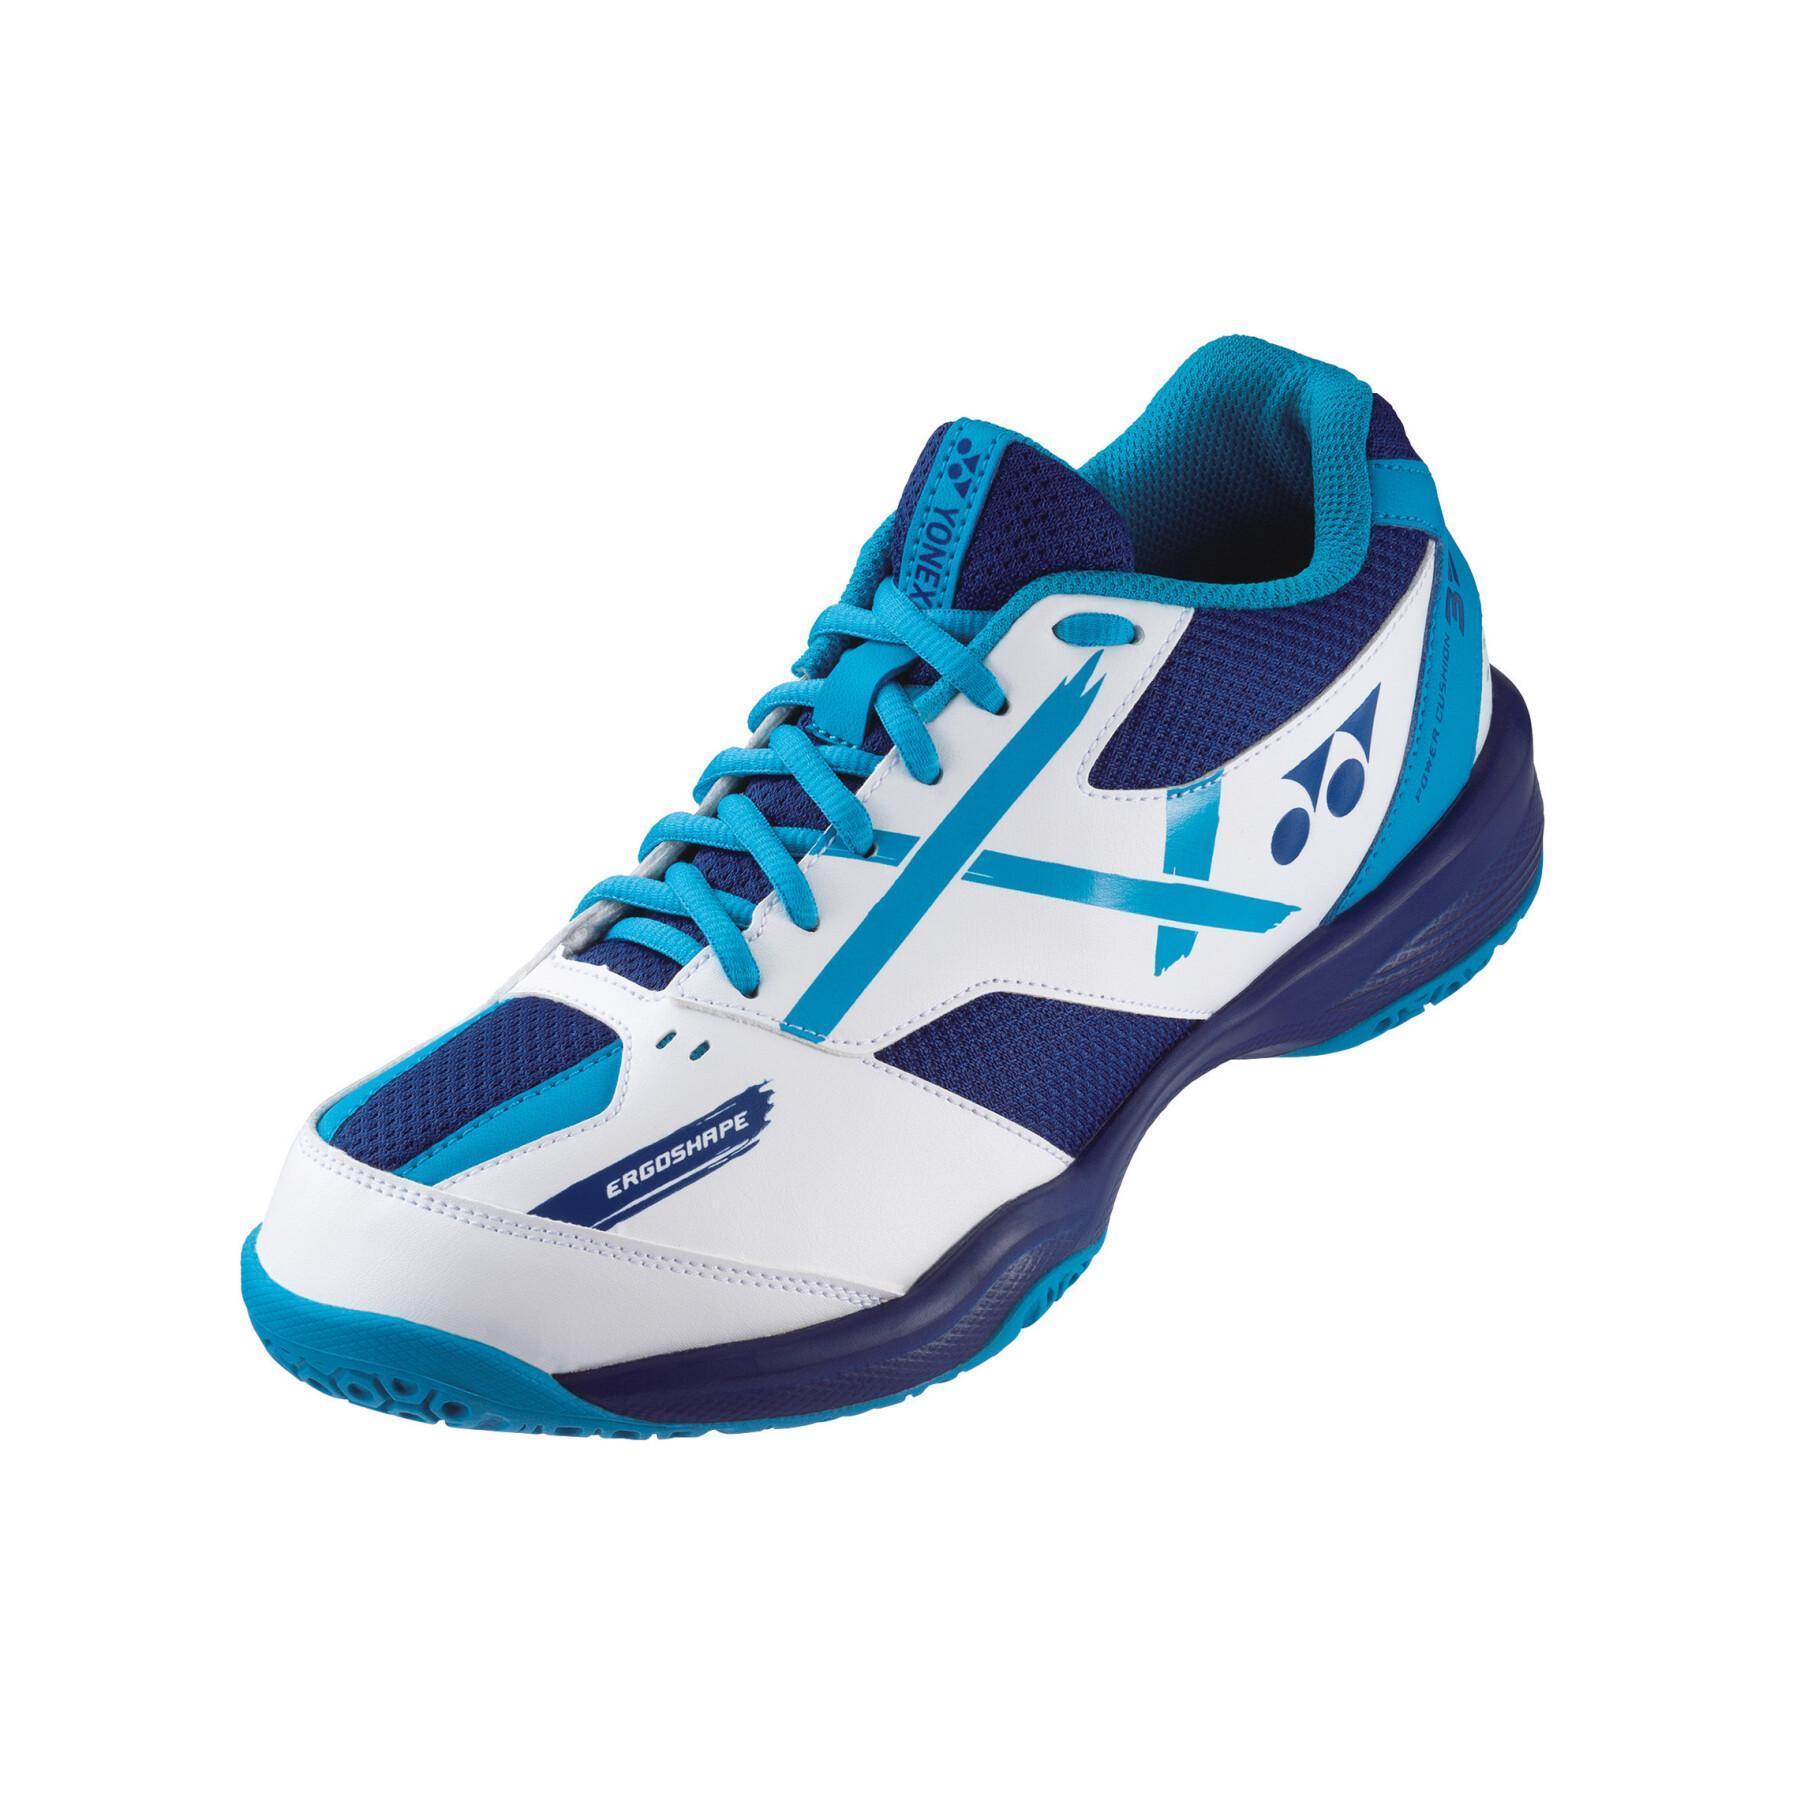 Badminton shoes Yonex PC 39